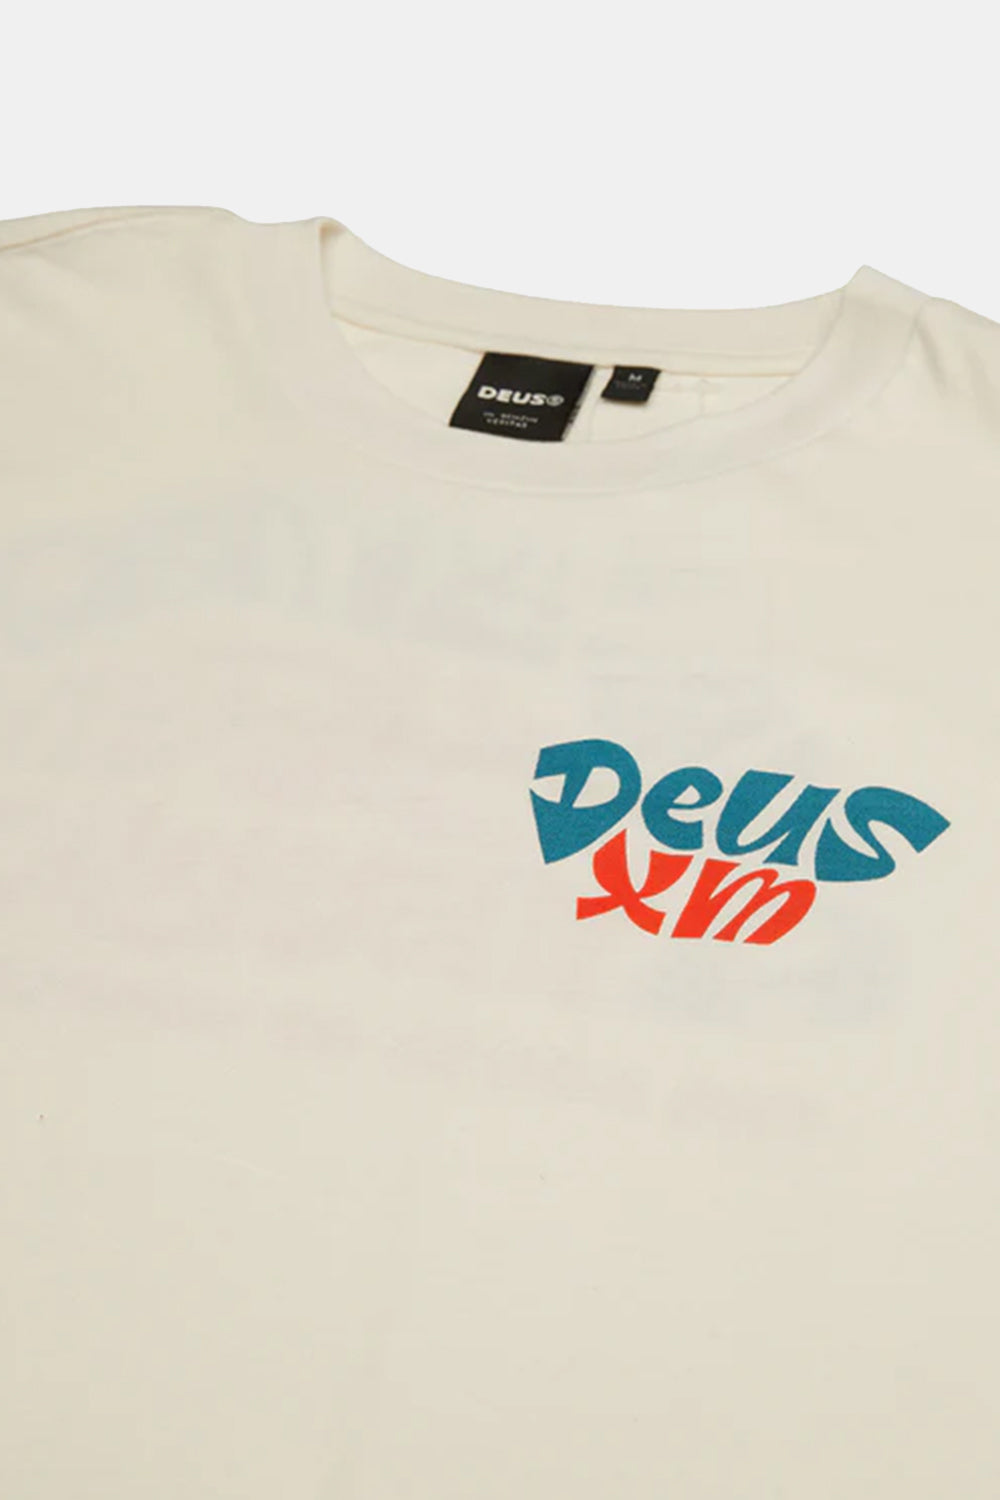 Deus Tables T-shirt (Vintage White)